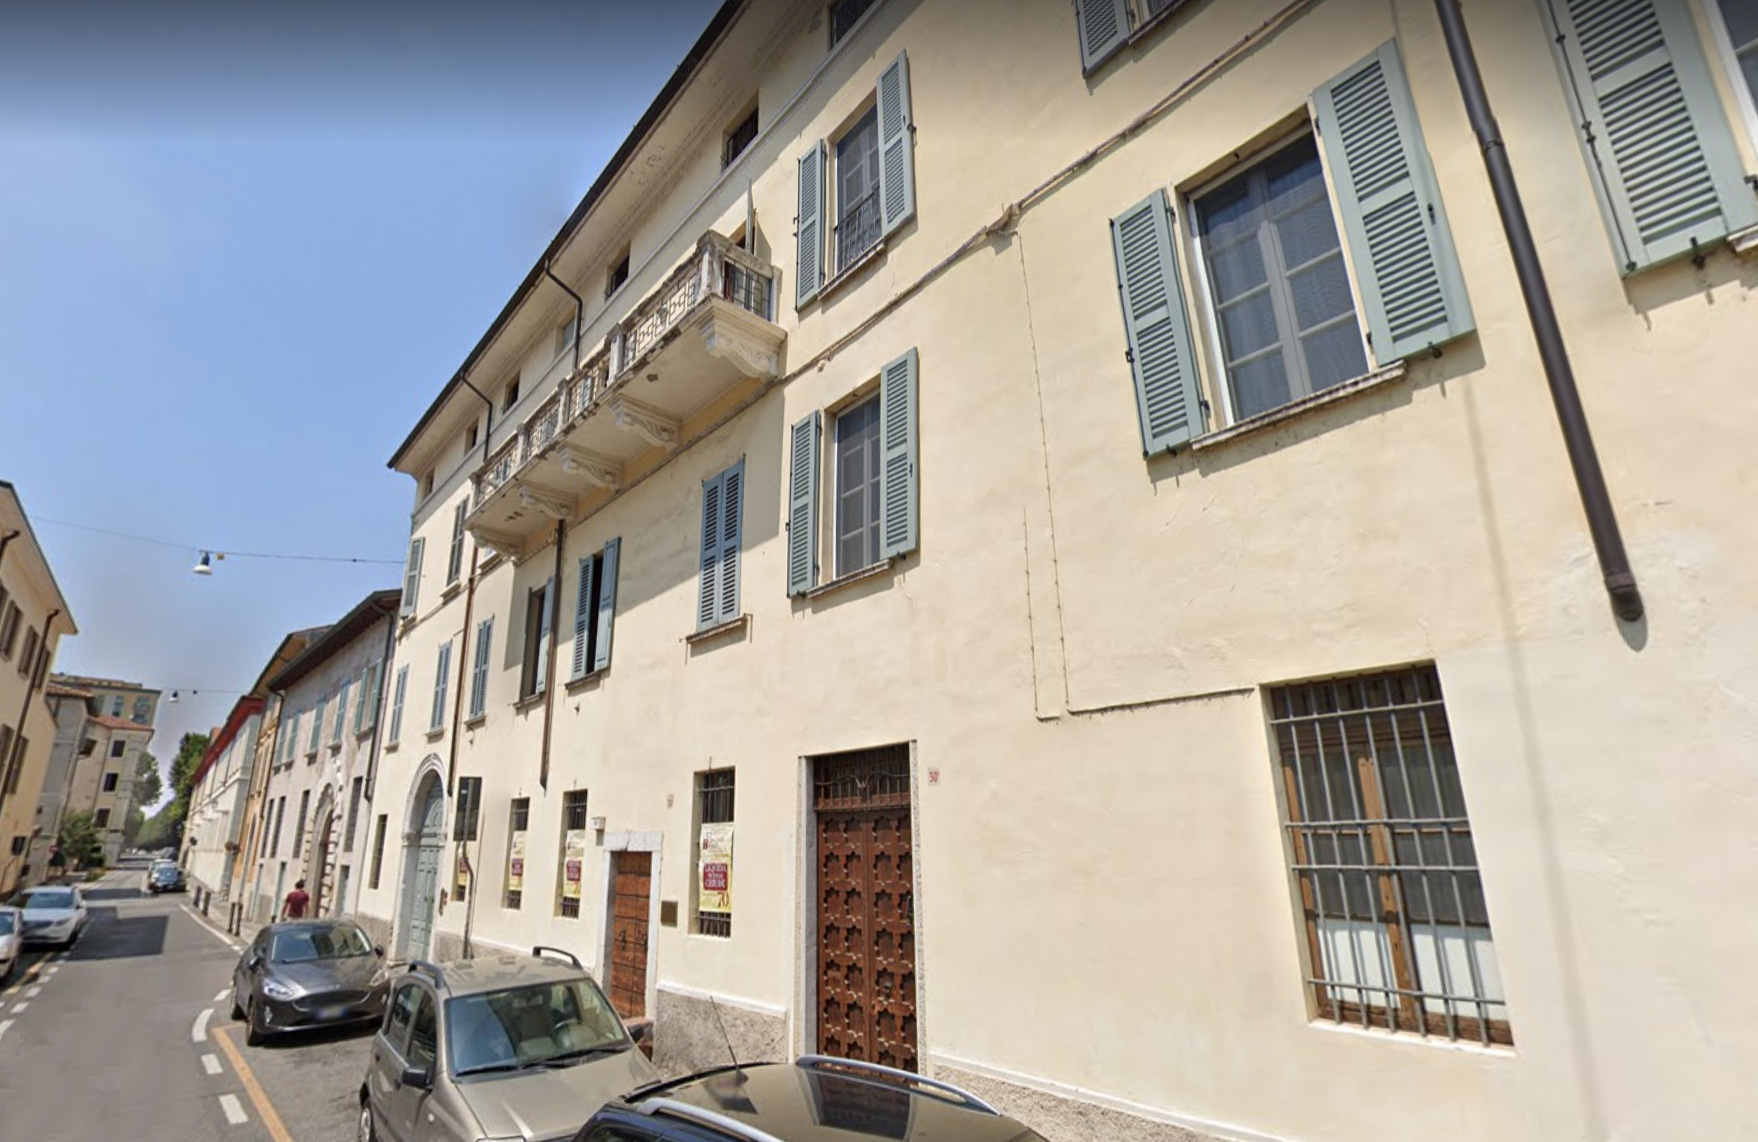 Casa in Contrada del Carmine 30B/C/D e 32 (casa, in linea) - Brescia (BS)  (XVI)